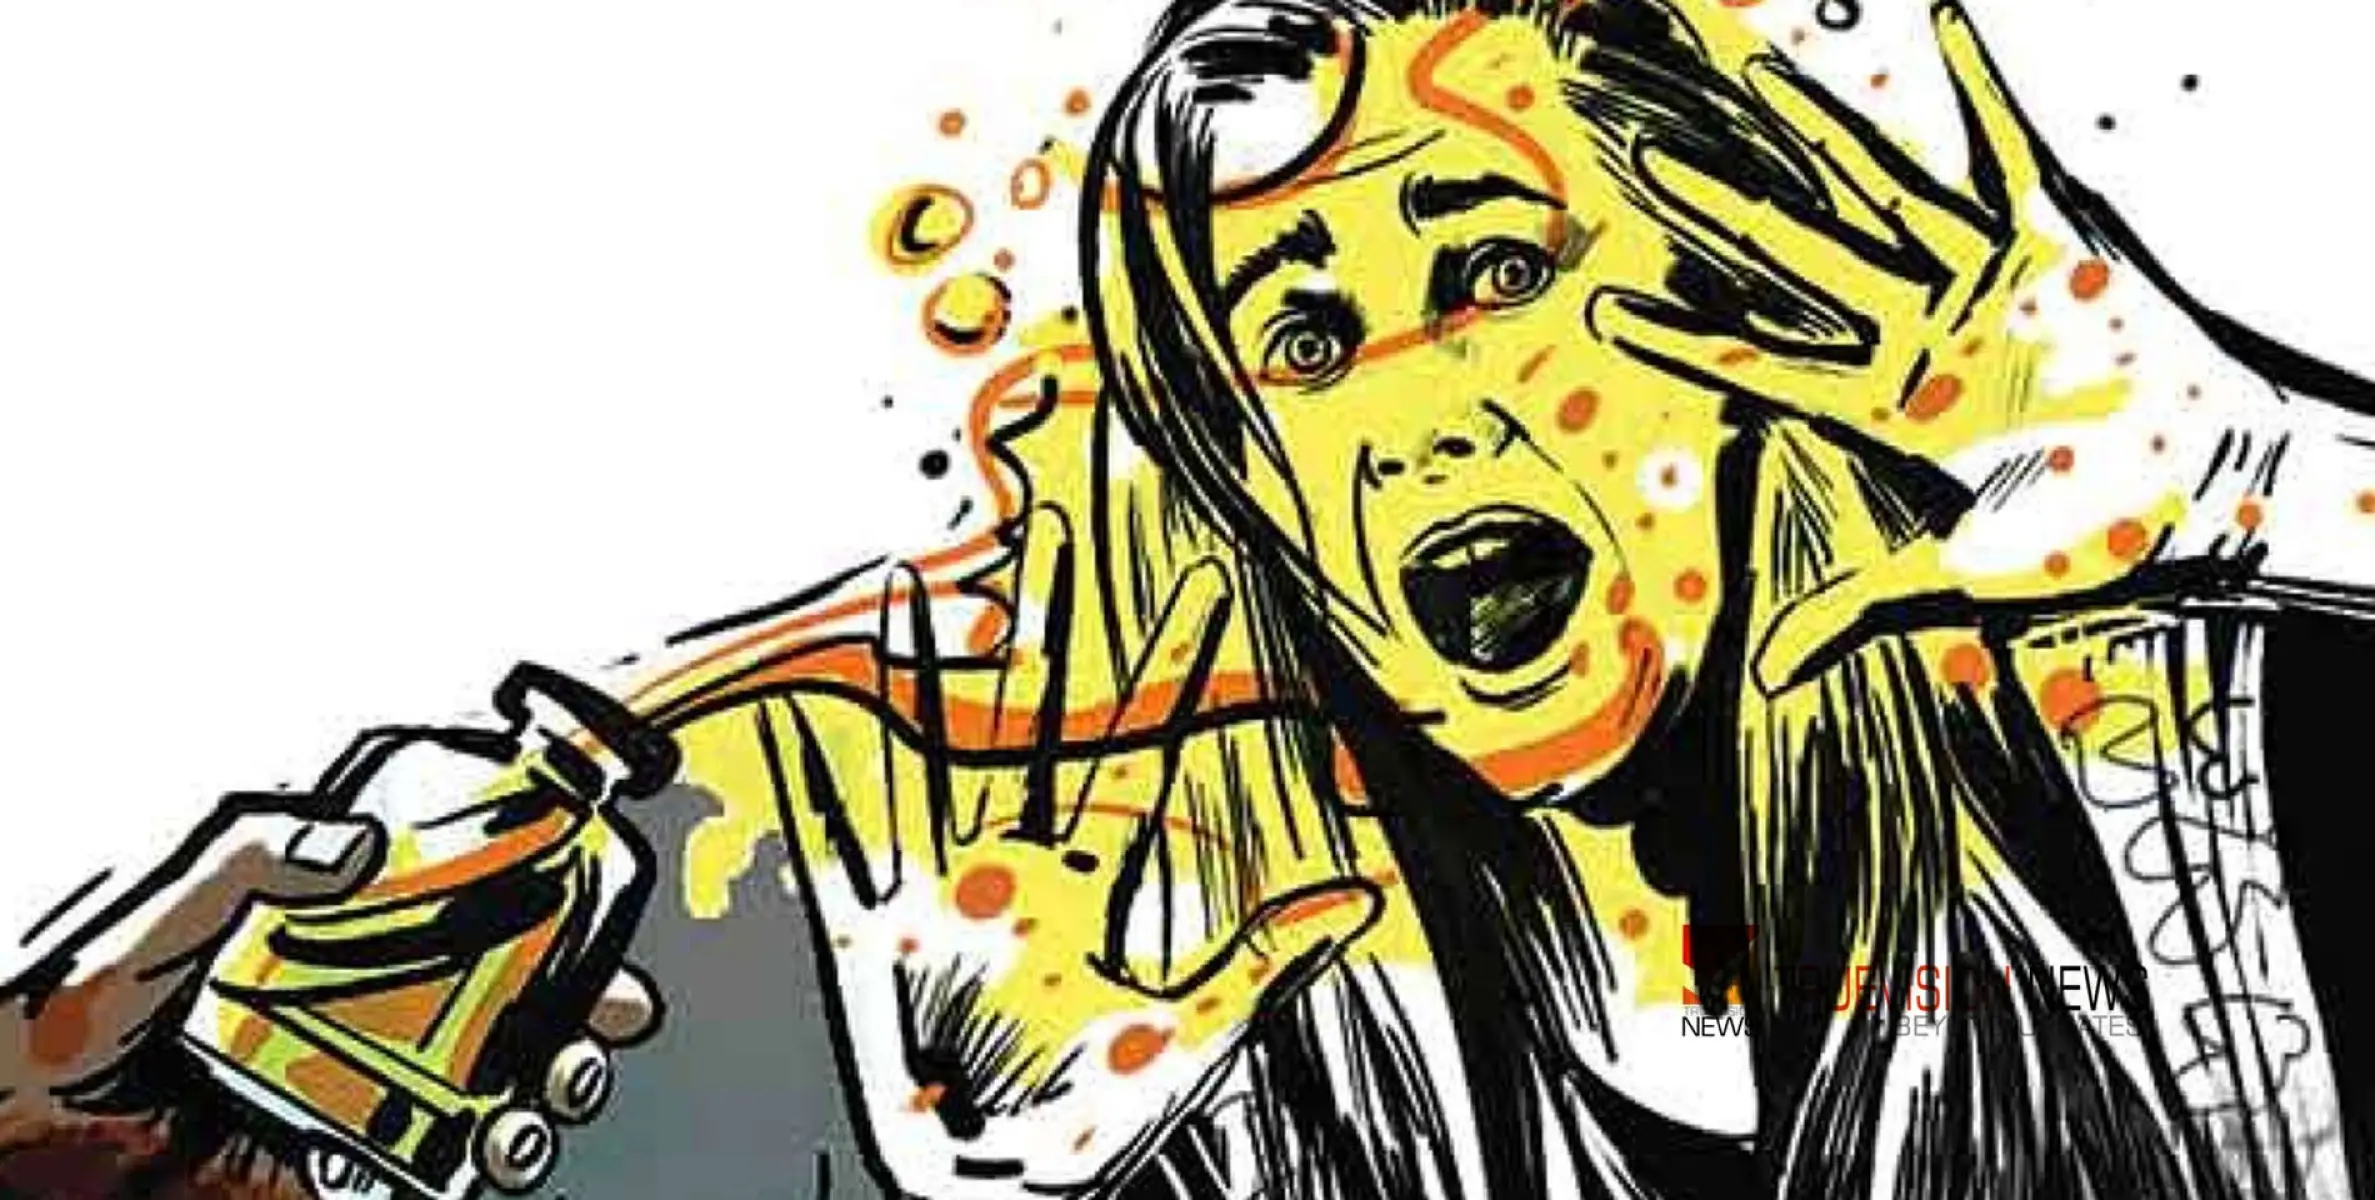 #Acidattack |ദില്ലിയിൽ പ്രായപൂർത്തിയാകാത്ത പെൺകുട്ടിക്ക് നേരെ ആസിഡ് ആക്രമണം